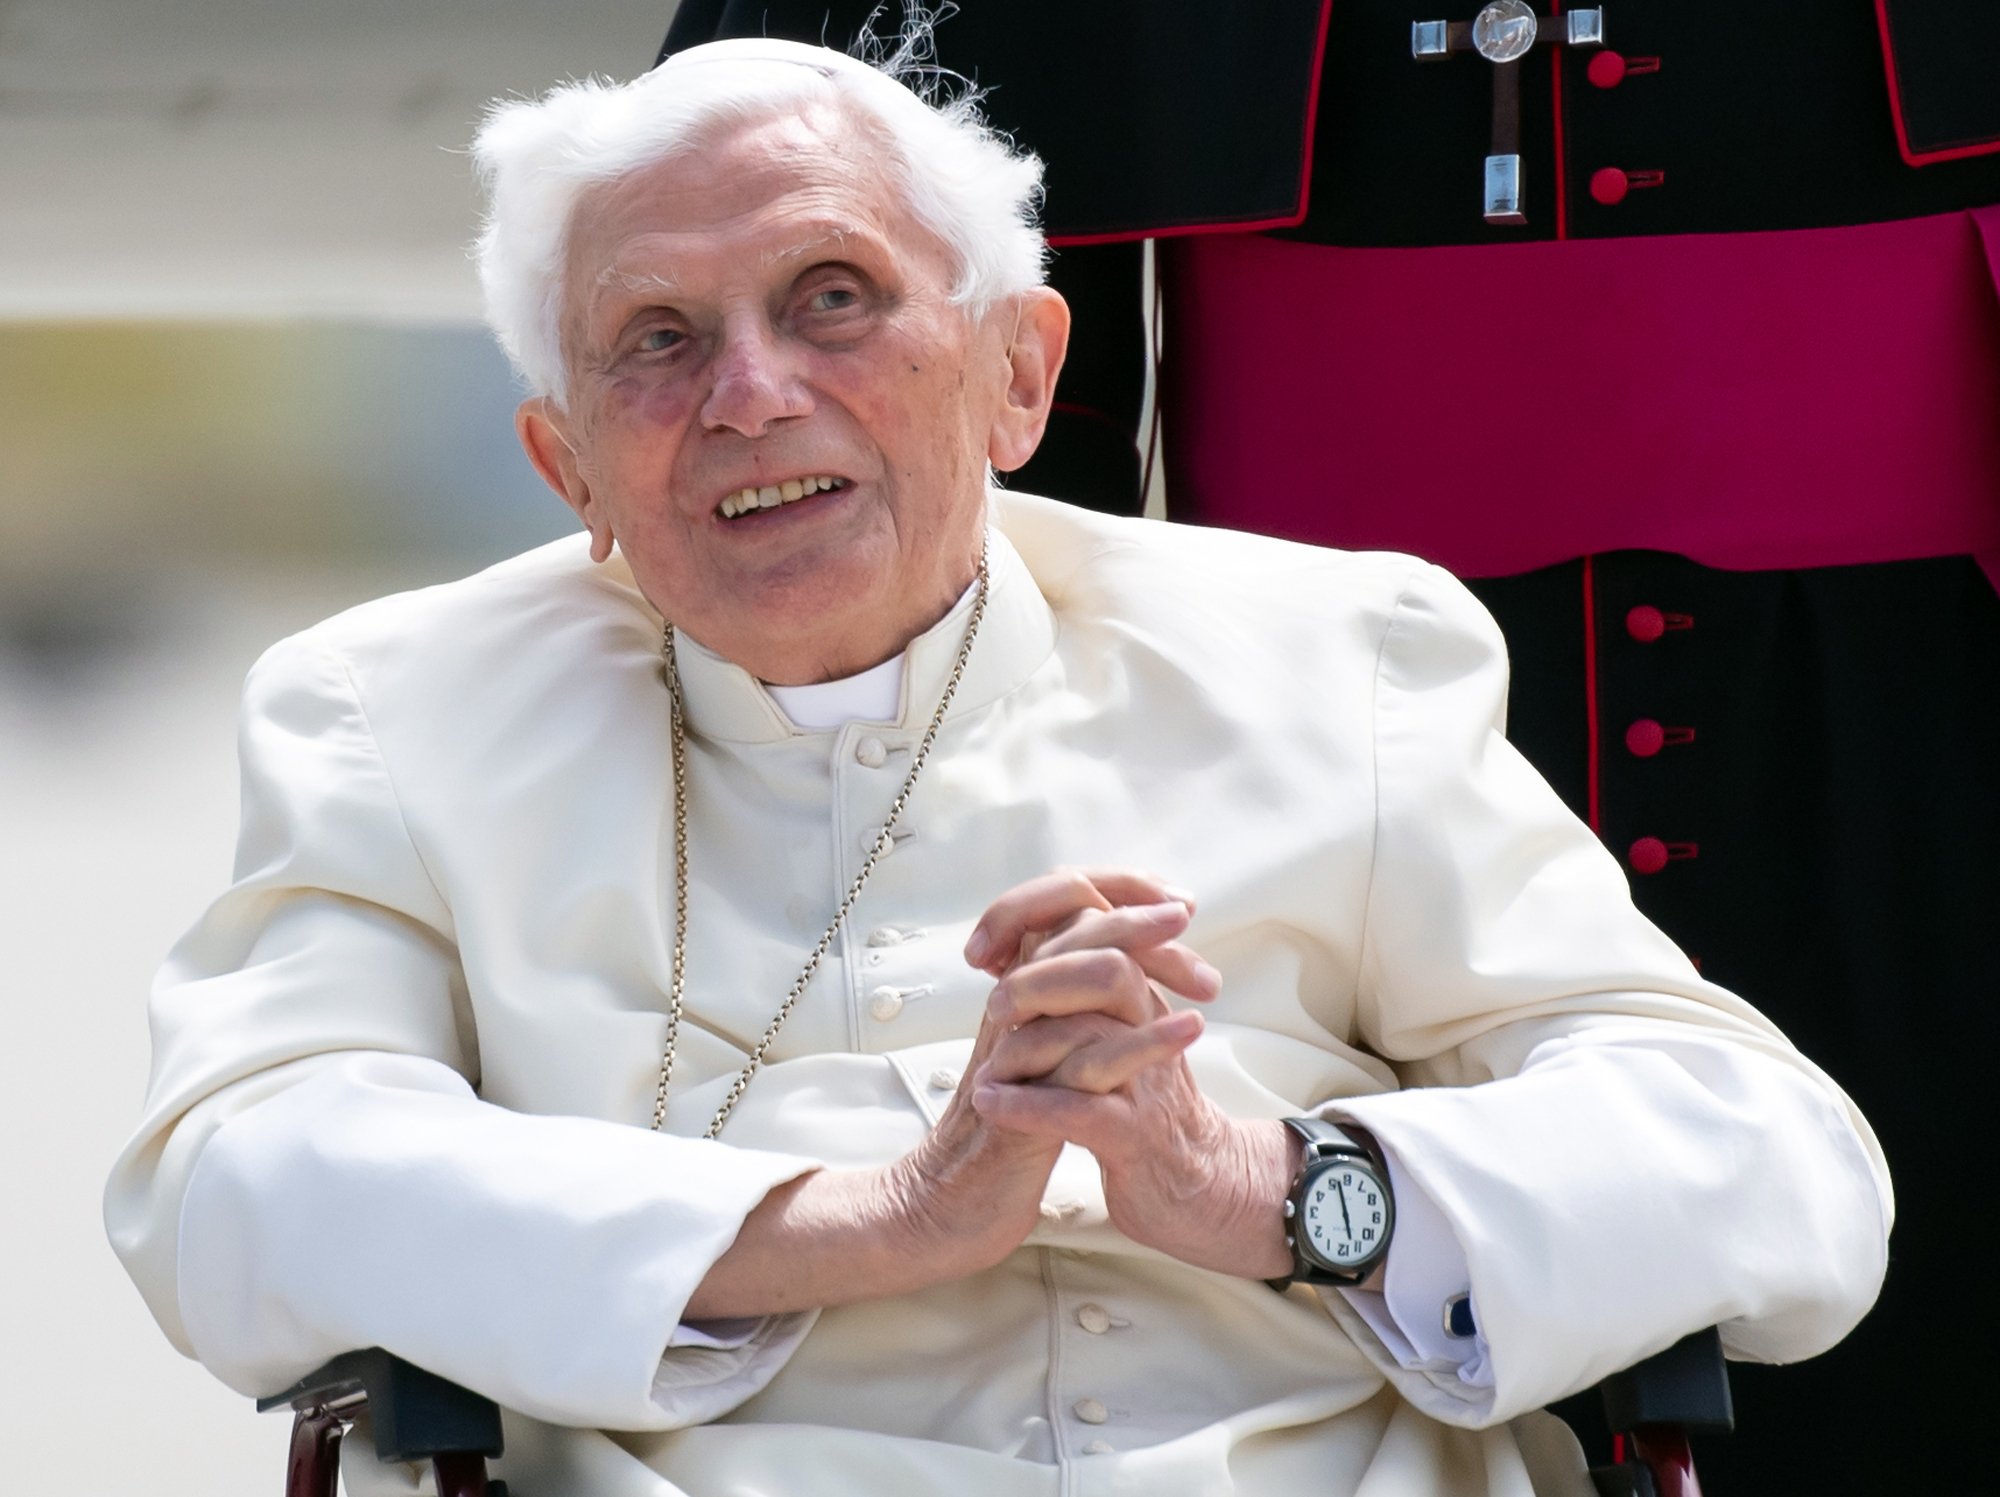 Archivada la investigación contra Benedicto XVI por complicidad en abusos sexuales por falta de pruebas